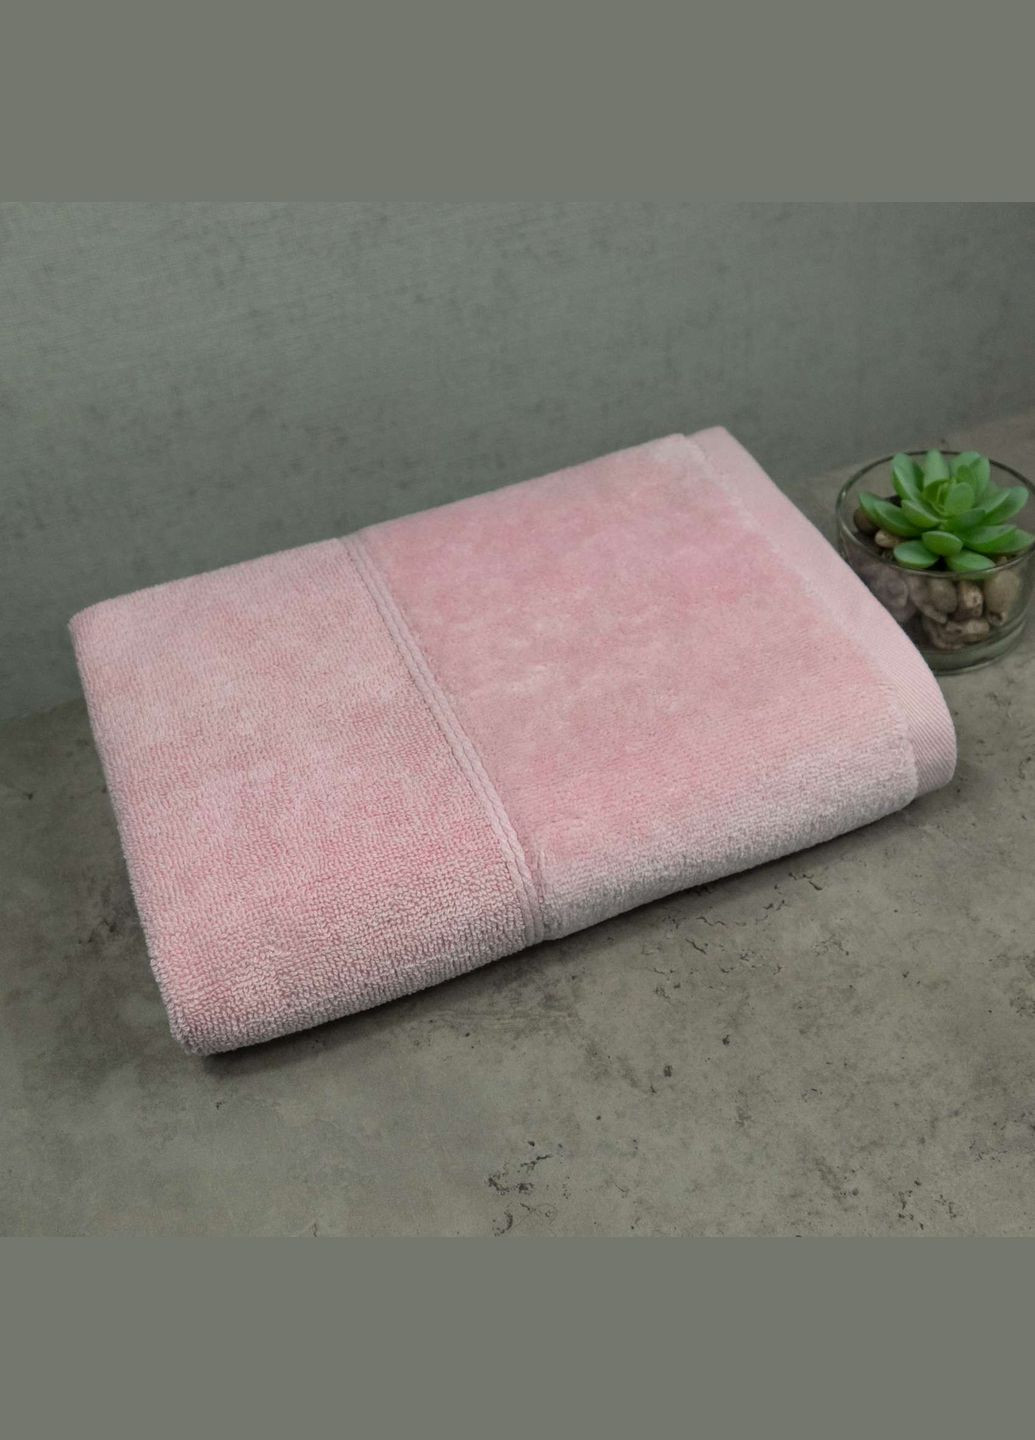 GM Textile полотенце для лица и рук махра/велюр 40x70см премиум качества milado 550г/м2 () розовый производство -